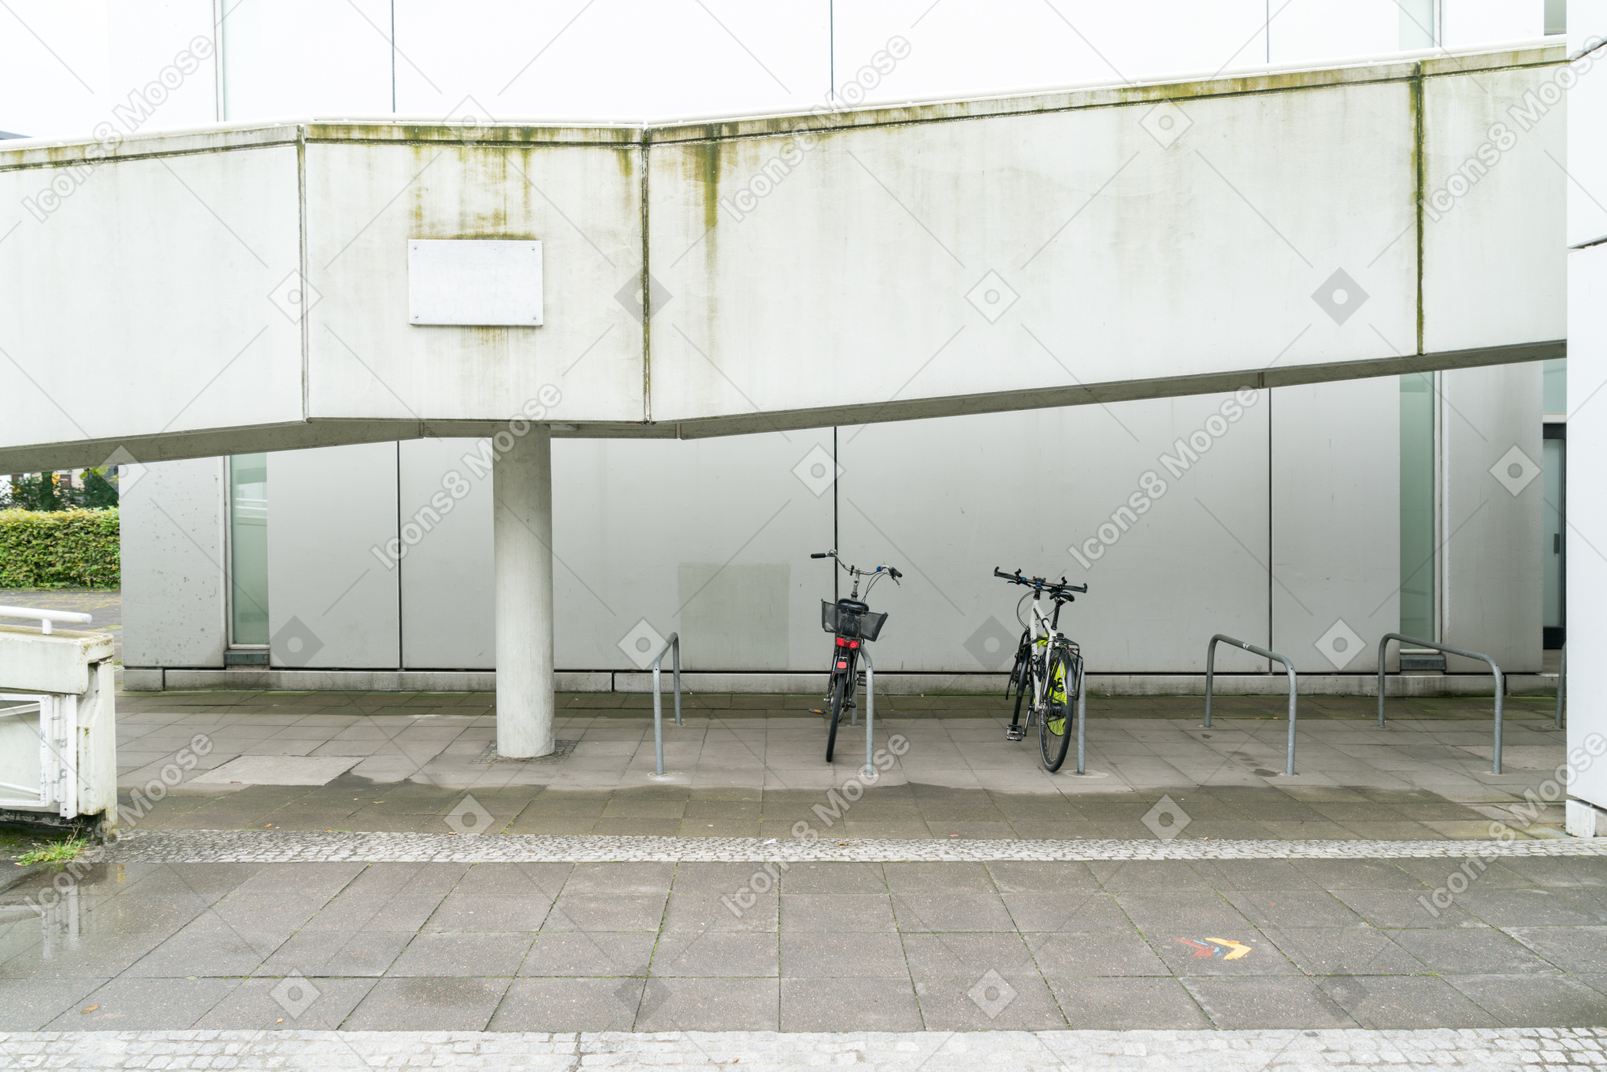 Dos bicicletas en el estacionamiento frente al edificio blanco